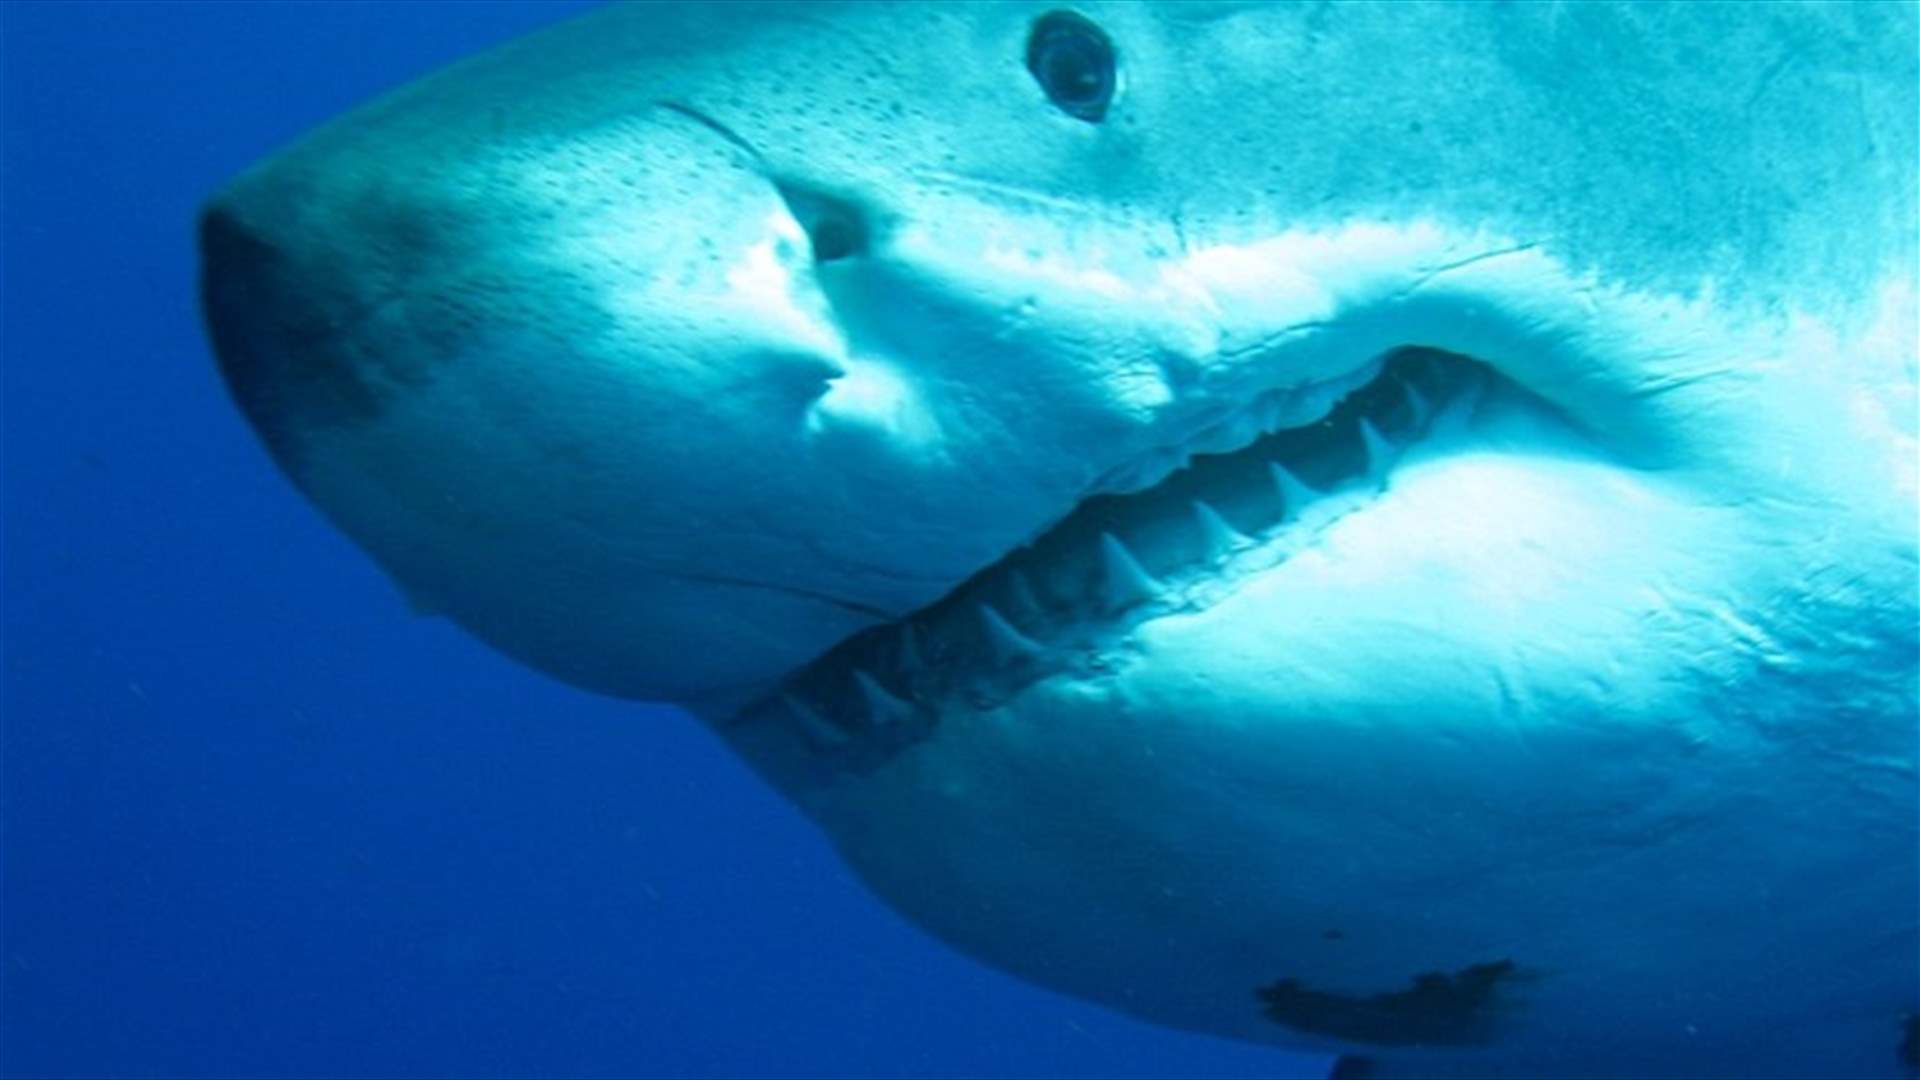 بالفيديو - أكبر سمكة قرش بيضاء في العالم تظهر من جديد!